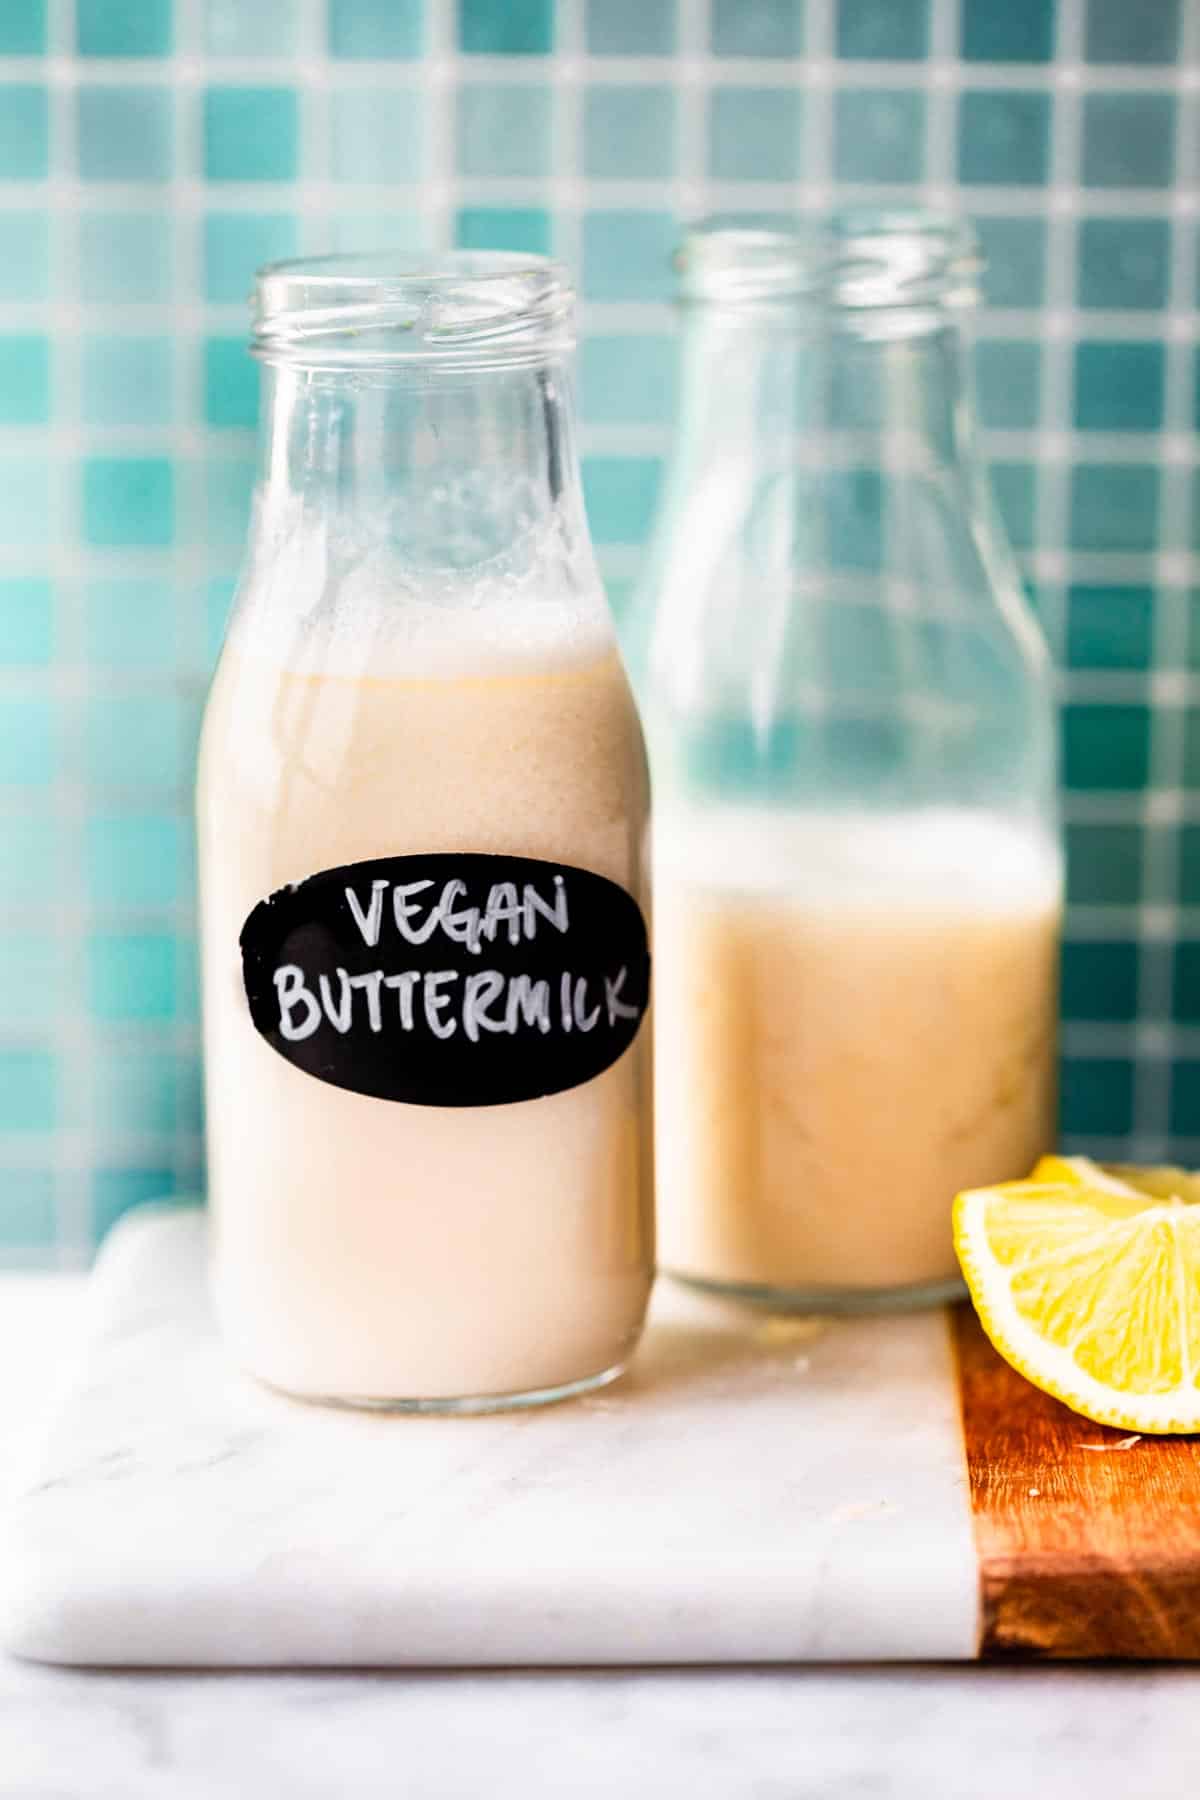 A glass jar of vegan buttermilk.